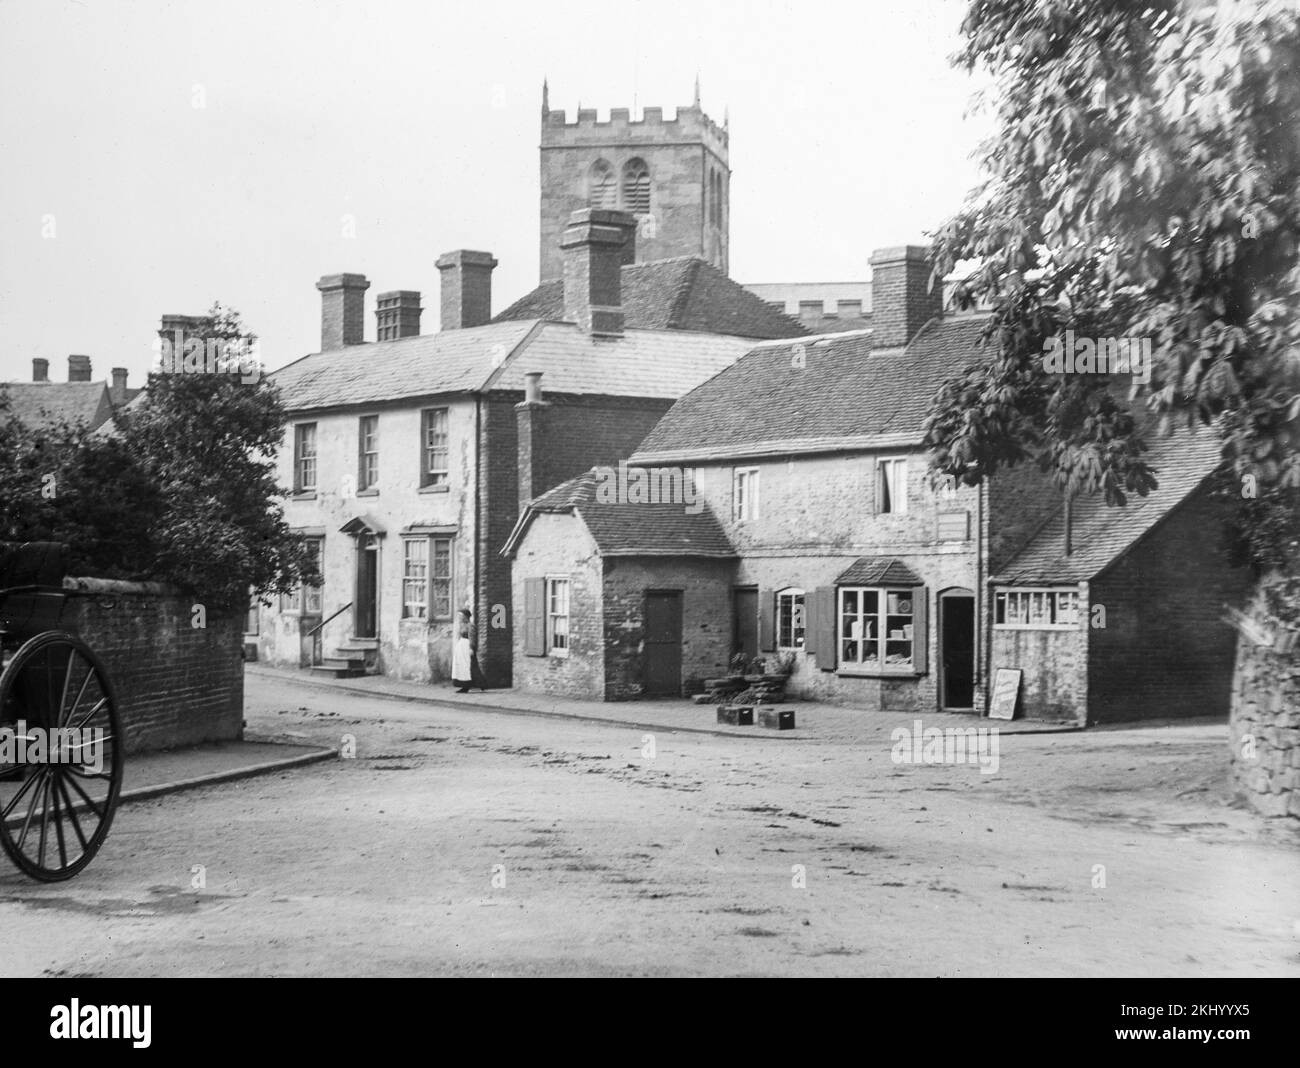 Una fotografia in bianco e nero del tardo 19th secolo che mostra un villaggio rurale inglese con il suo negozio e la chiesa. Foto Stock